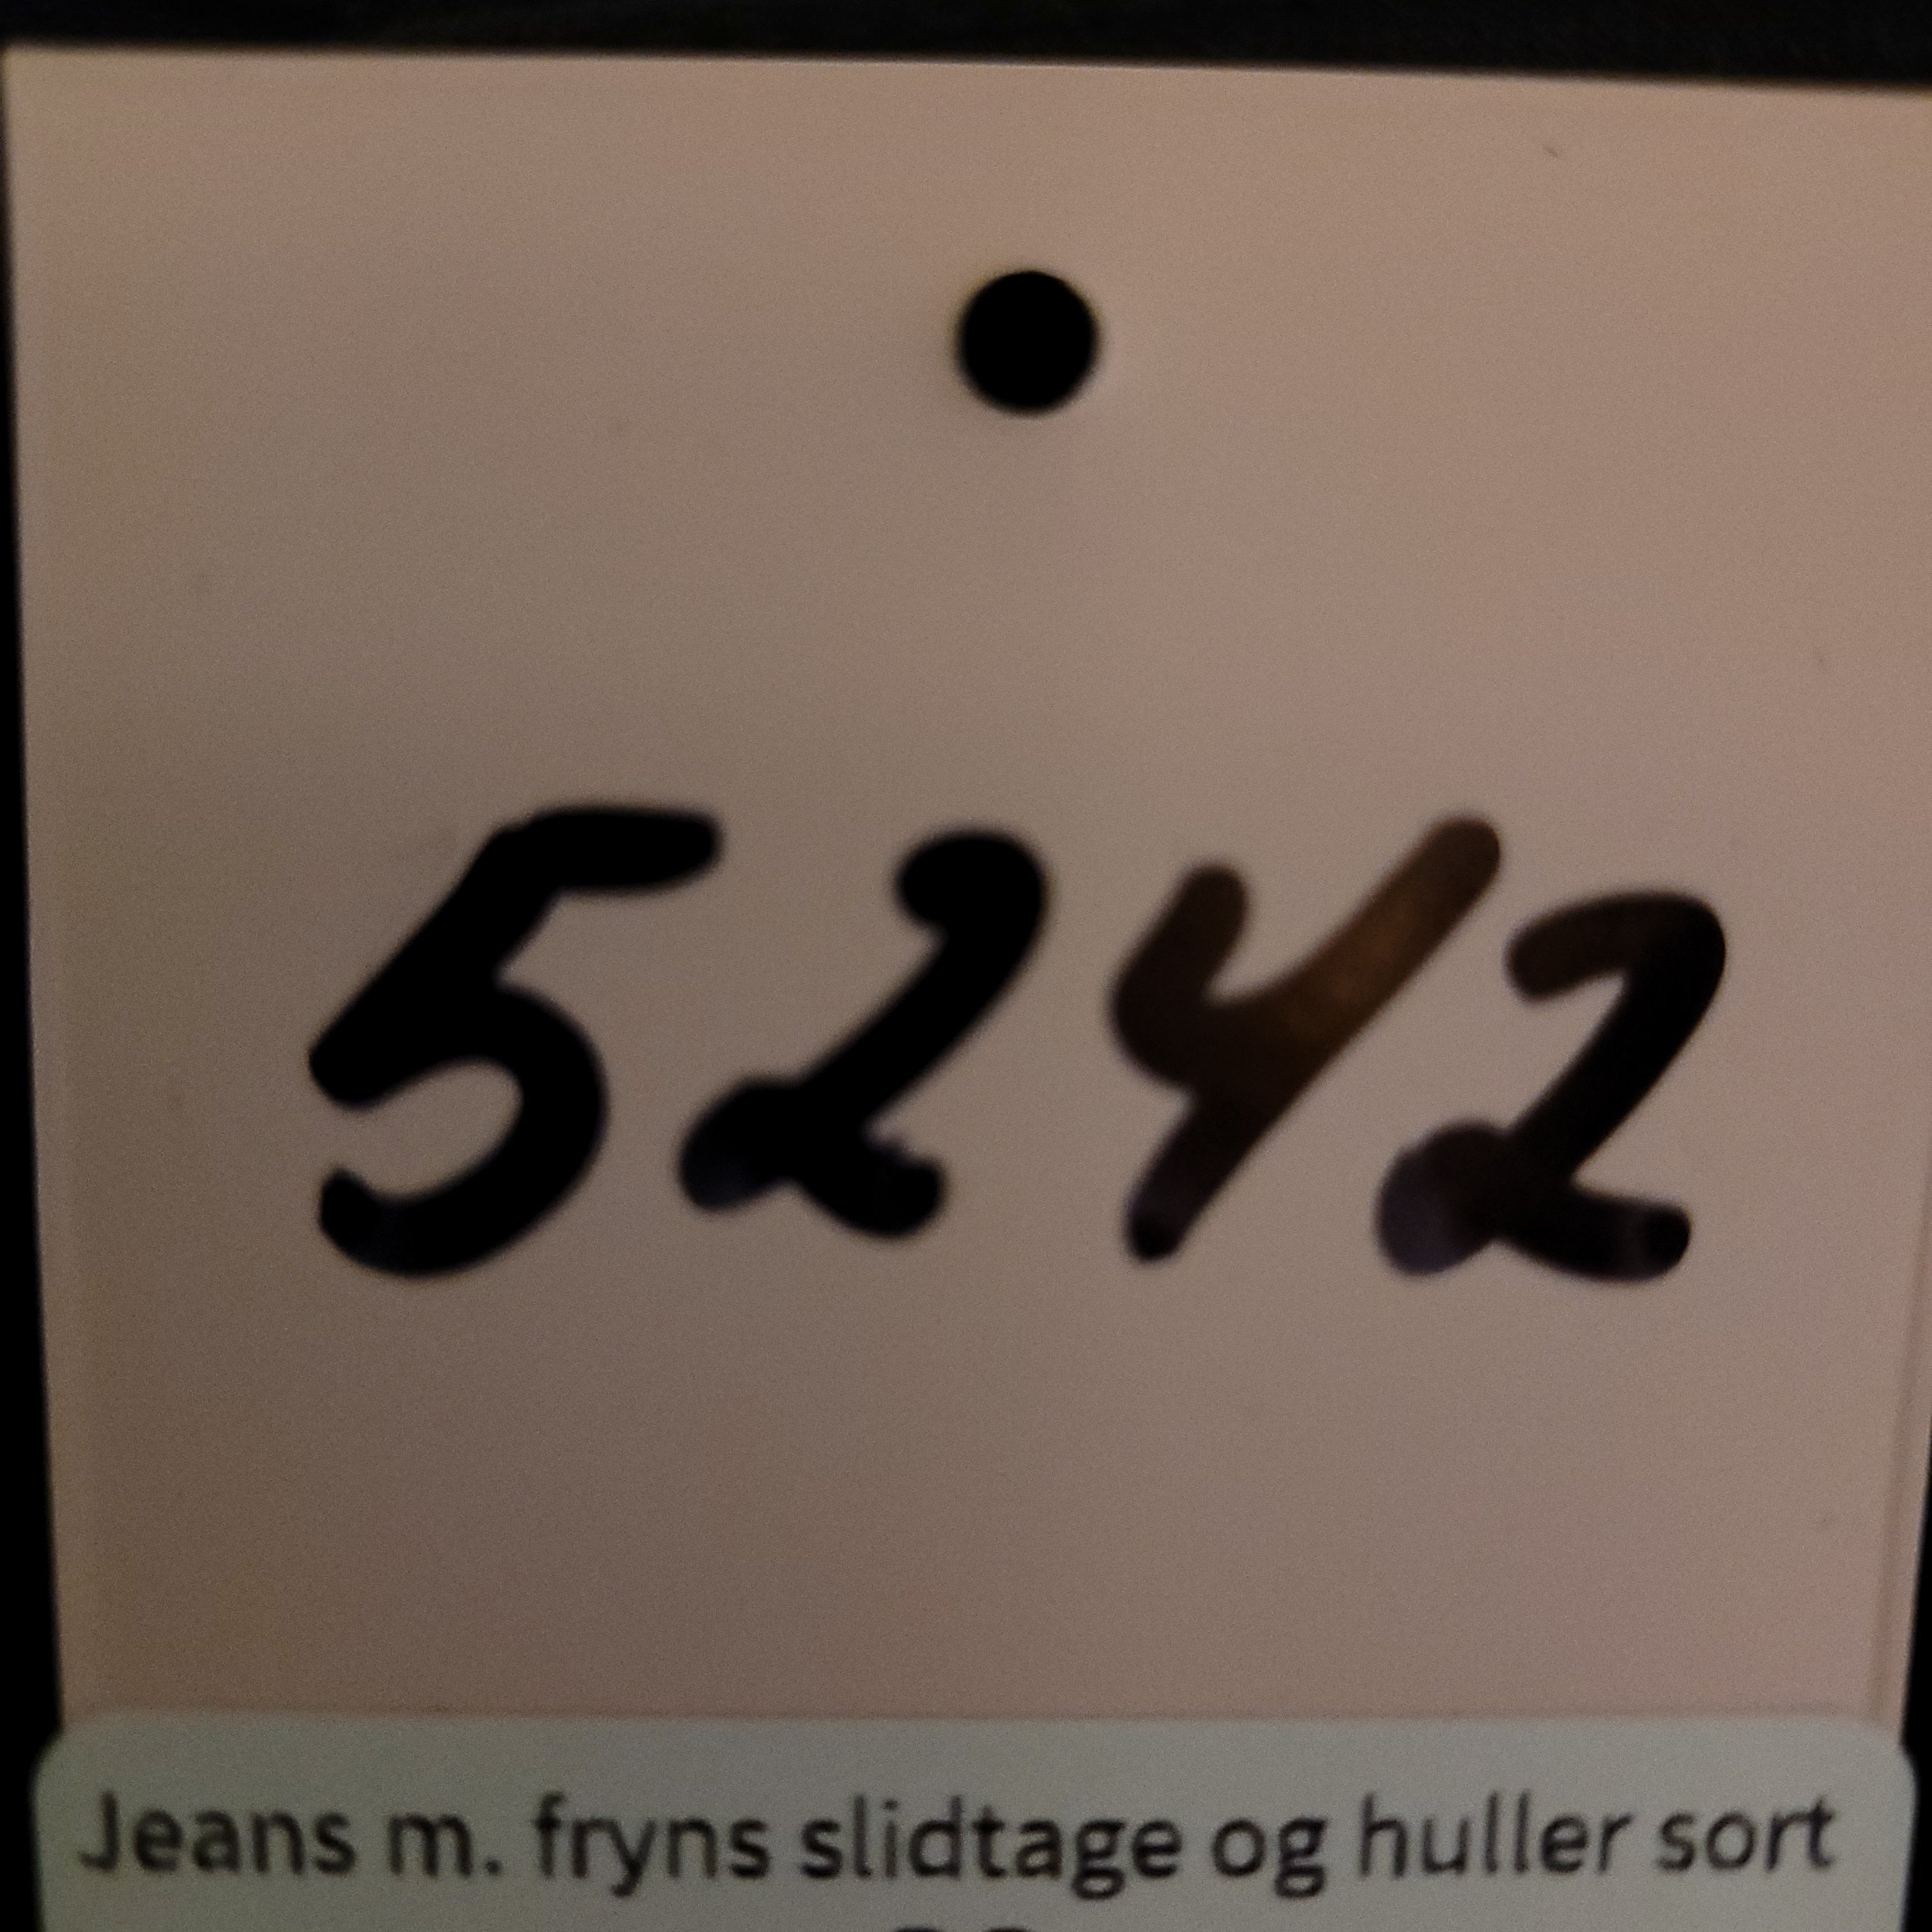 Jeans m. fryns slidtage og huller sort